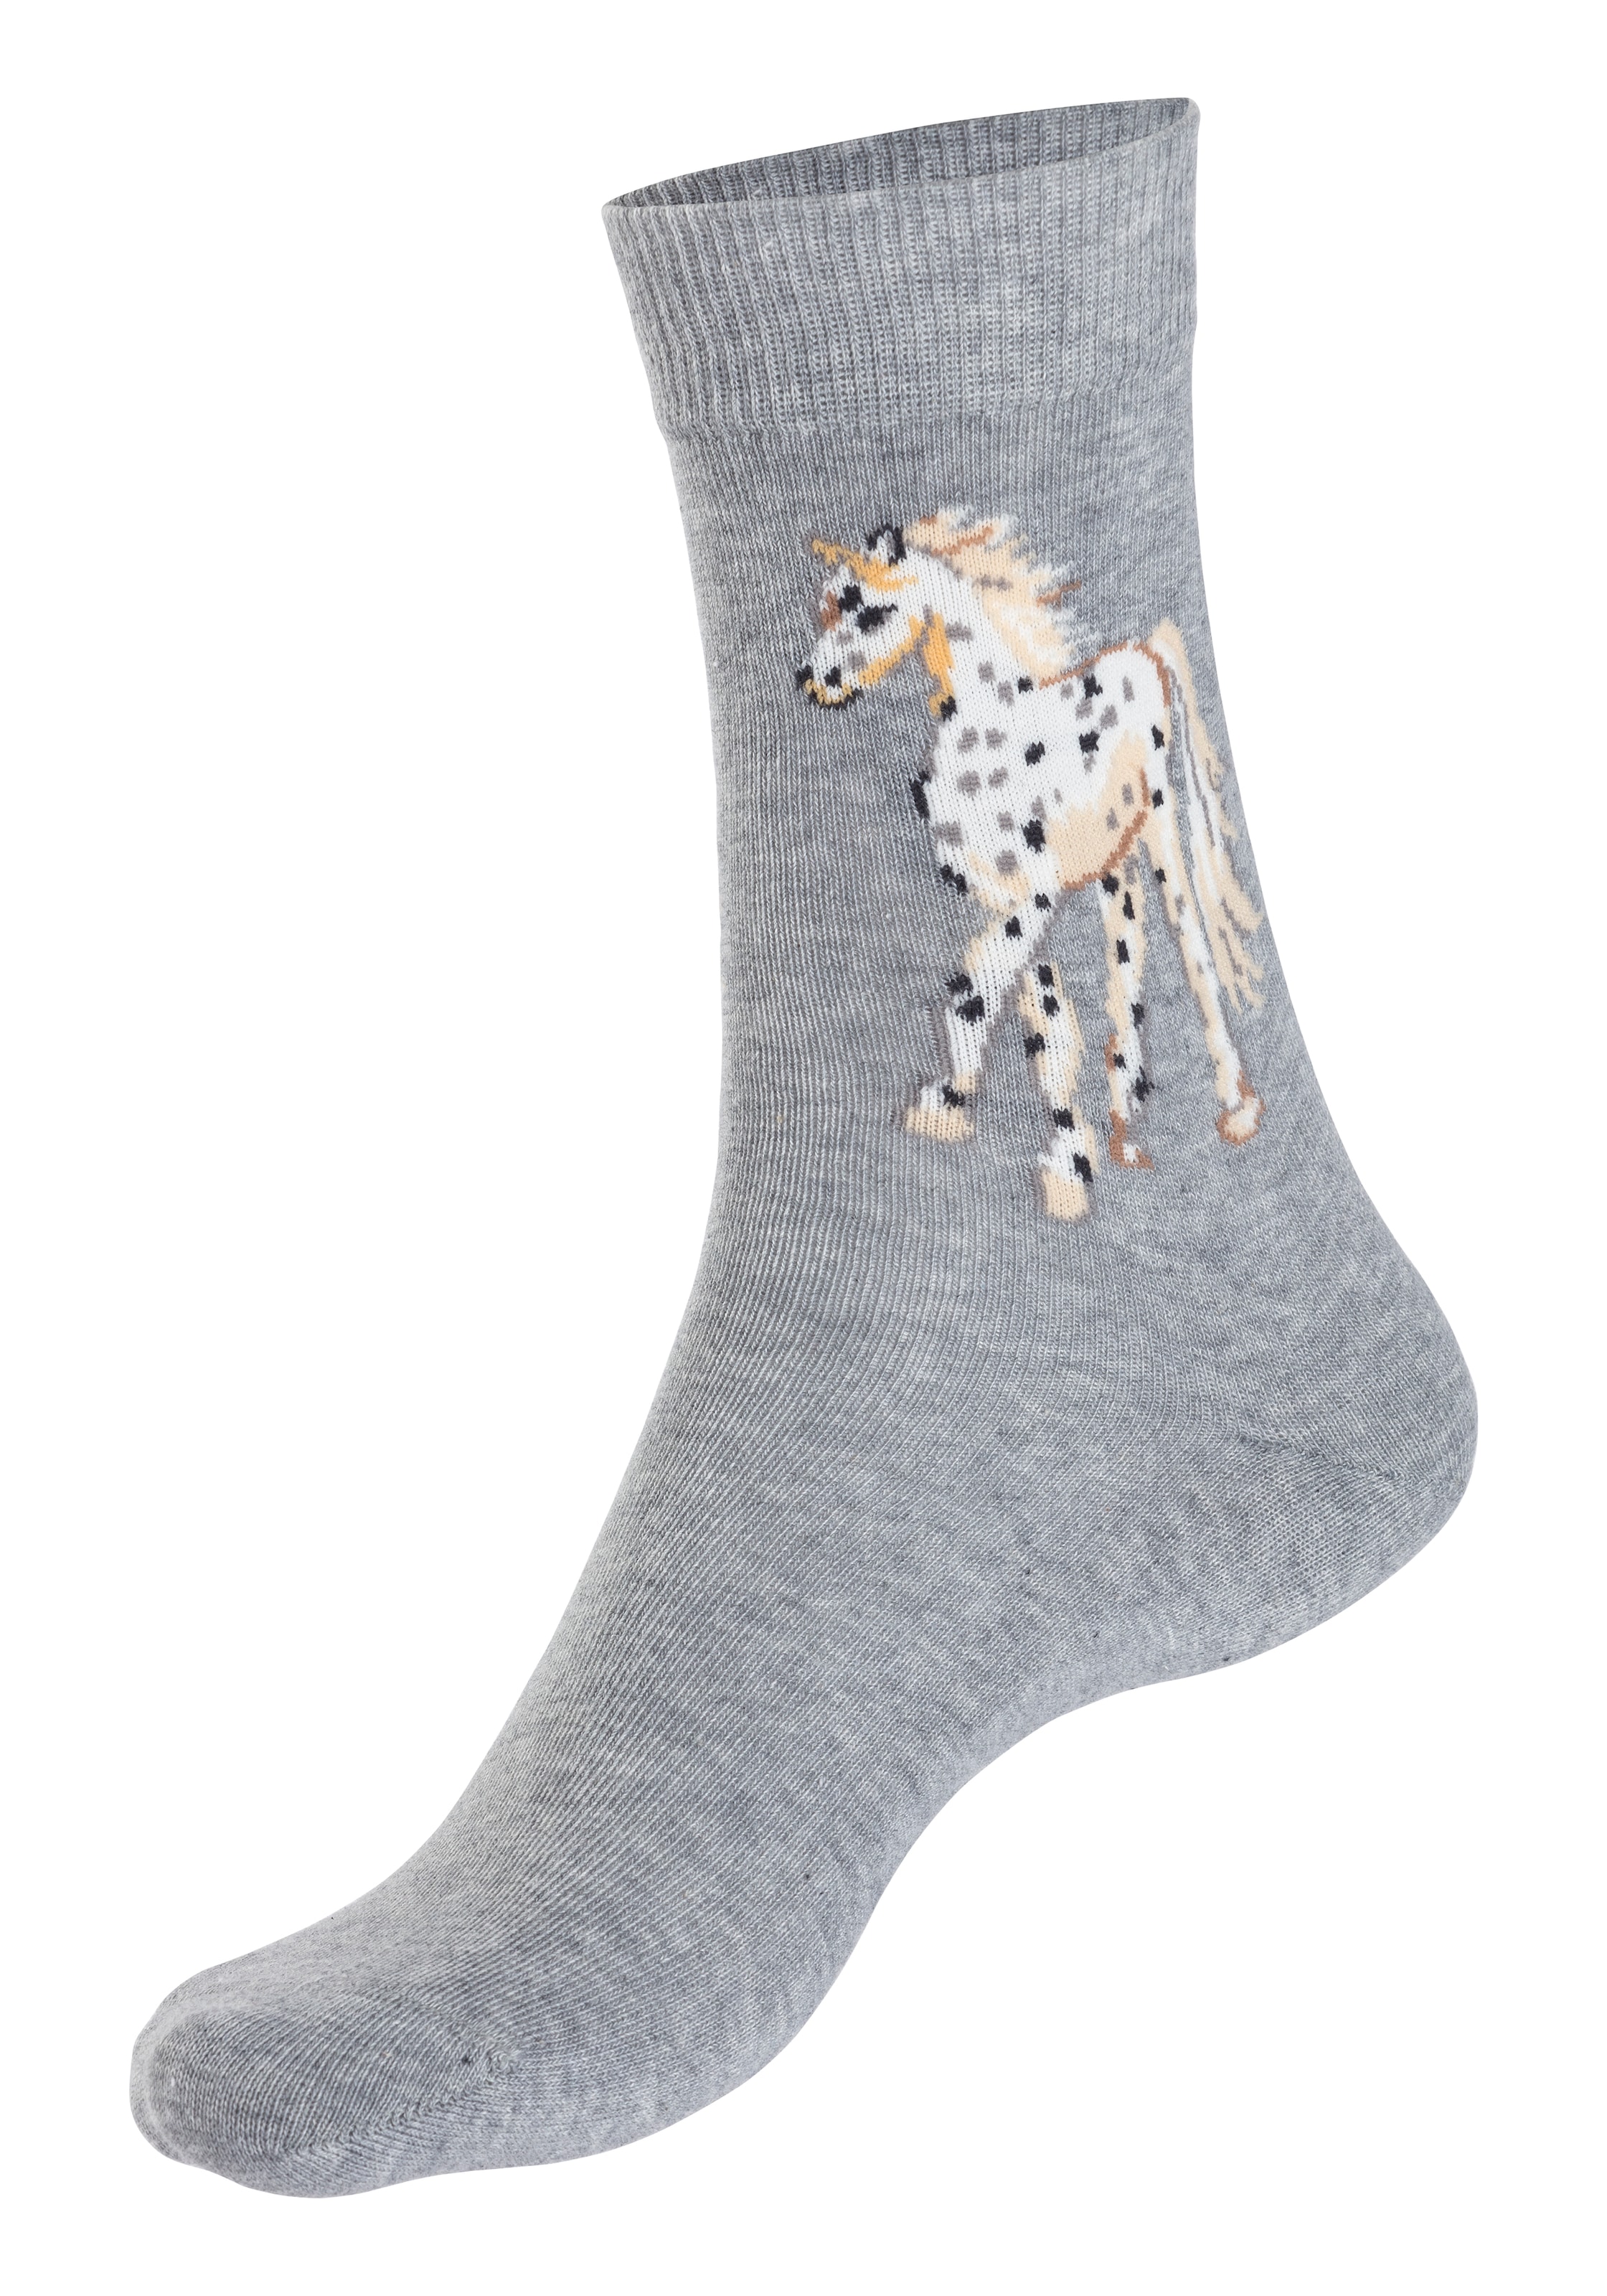 H.I.S Socken, online unterschiedlichen Pferdemotiven Mit Paar), (5 kaufen